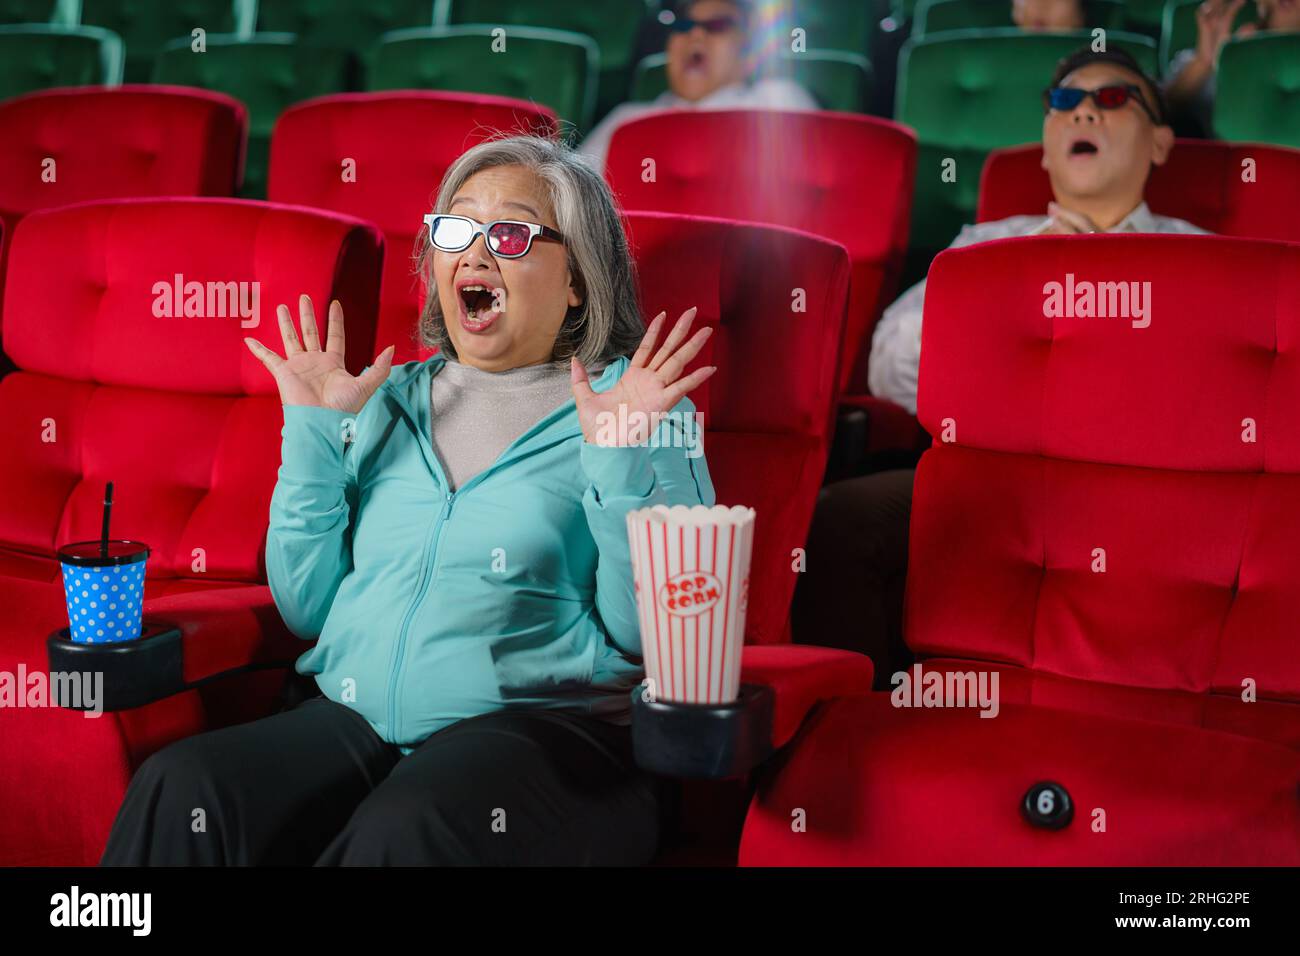 Les femmes âgées asiatiques avec des lunettes regardent avec impatience des films 3D, pop-corn à la main, savourant l'expérience immersive. Banque D'Images